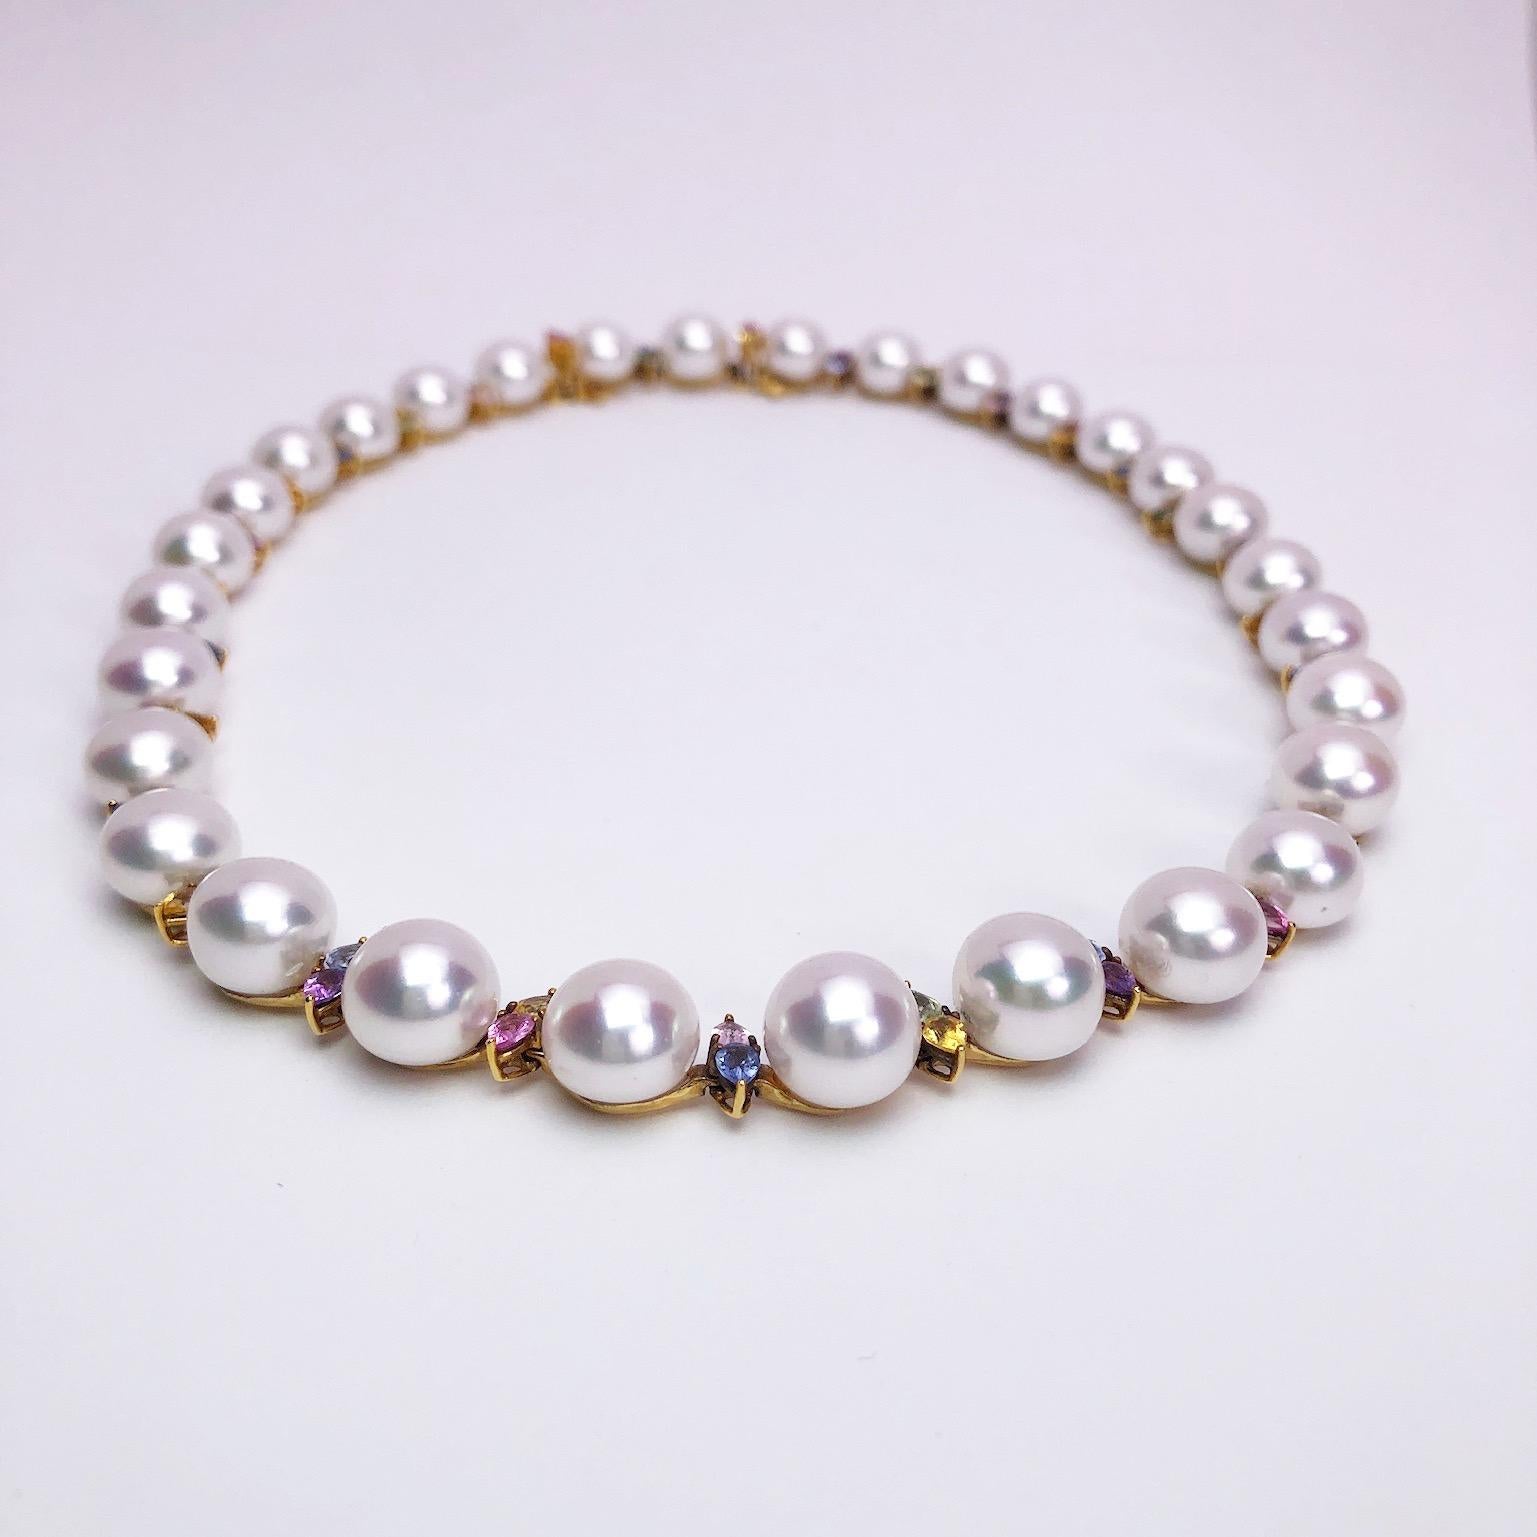 Eine tiefe Leidenschaft für Perlen und ein unaufhaltsames Engagement für dieses einzigartige Juwel kennzeichnen die Geschichte von Schoeffel. Seit ihrer Gründung im Jahr 1921 in Deutschland hat sich die Marke den Perlen verschrieben, mit der